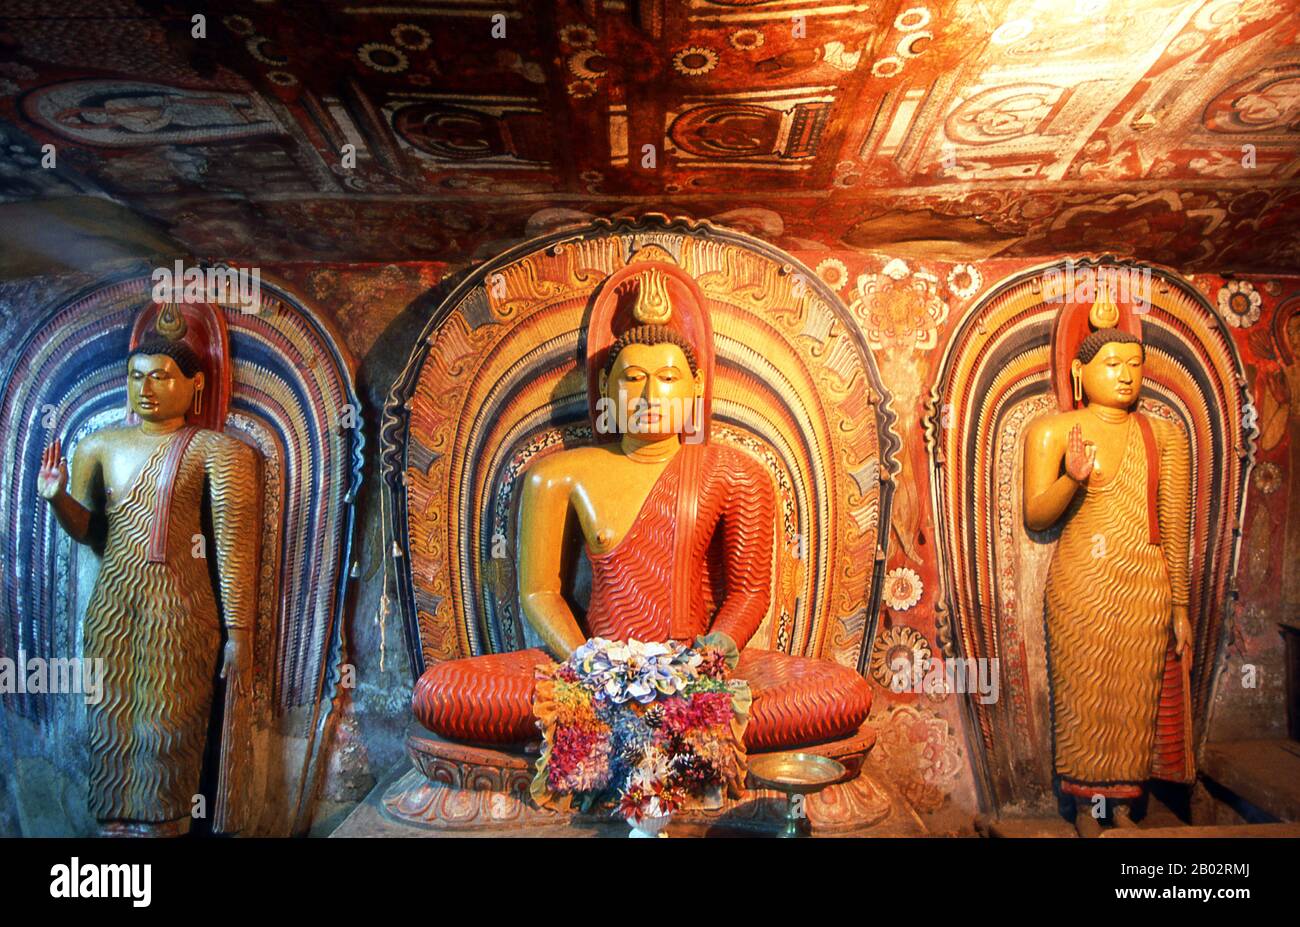 Le temple bouddhiste de Dégaldoruwa est un temple de caverne et fut construit en 1771 ce par le roi Kirti Sri Rajasinha (1747 - 1782), membre de la famille royale de Madurai. Les belles fresques, peintes par la samanera (moine non ordonné) Devaragamapola Silvatenna en 1771-72, capturent la vie de Kandyan du XVIIIe siècle avec des détails incroyables et de la vivacité. Certaines peintures représentent le roi et la famille royale. L'artiste-moine a commencé une tendance, et les grottes de Dambulla ont ensuite été redécorées dans le même style que les autres temples. Kandy est la deuxième plus grande ville du Sri Lanka avec une population d'environ 170 000 habitants Banque D'Images